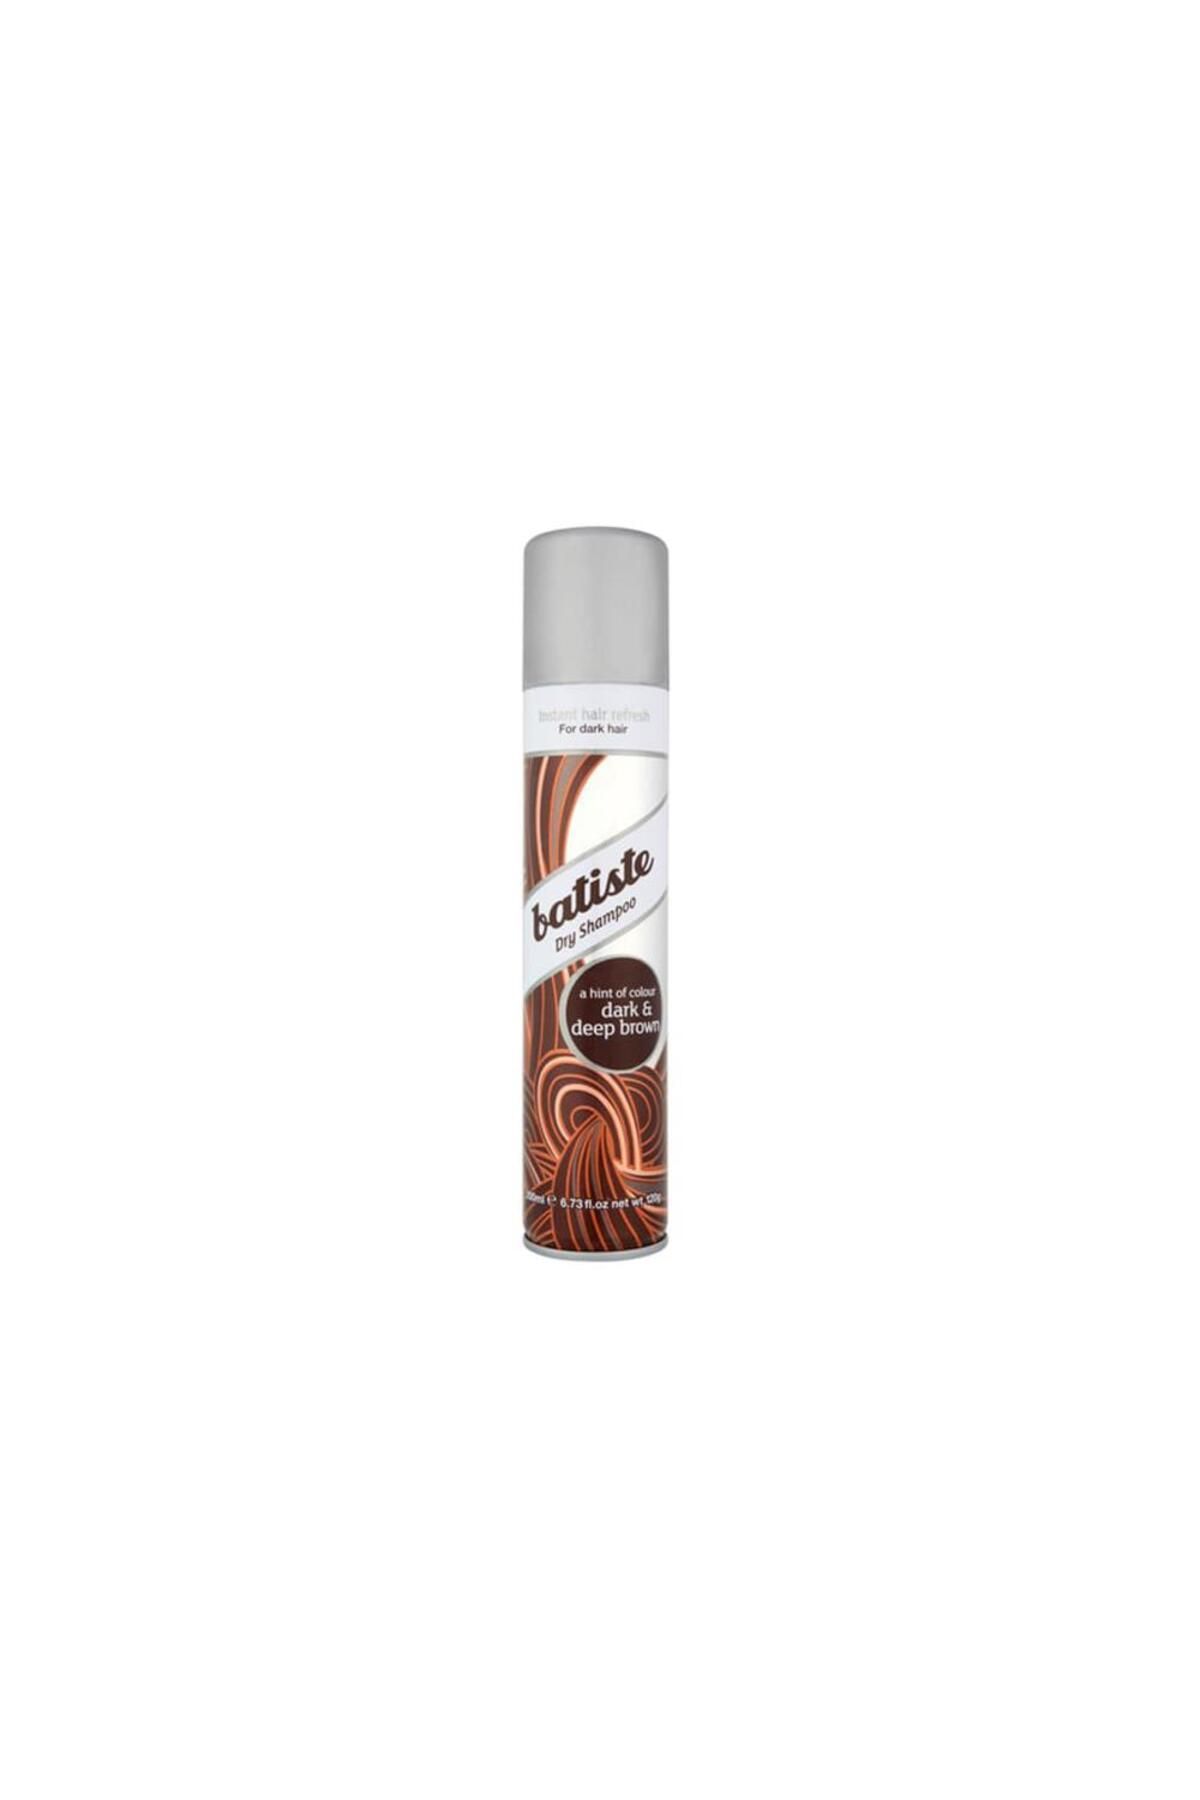 Batiste Dark Hair Kahverengi Saçlar için Kuru Şampuan 200ML